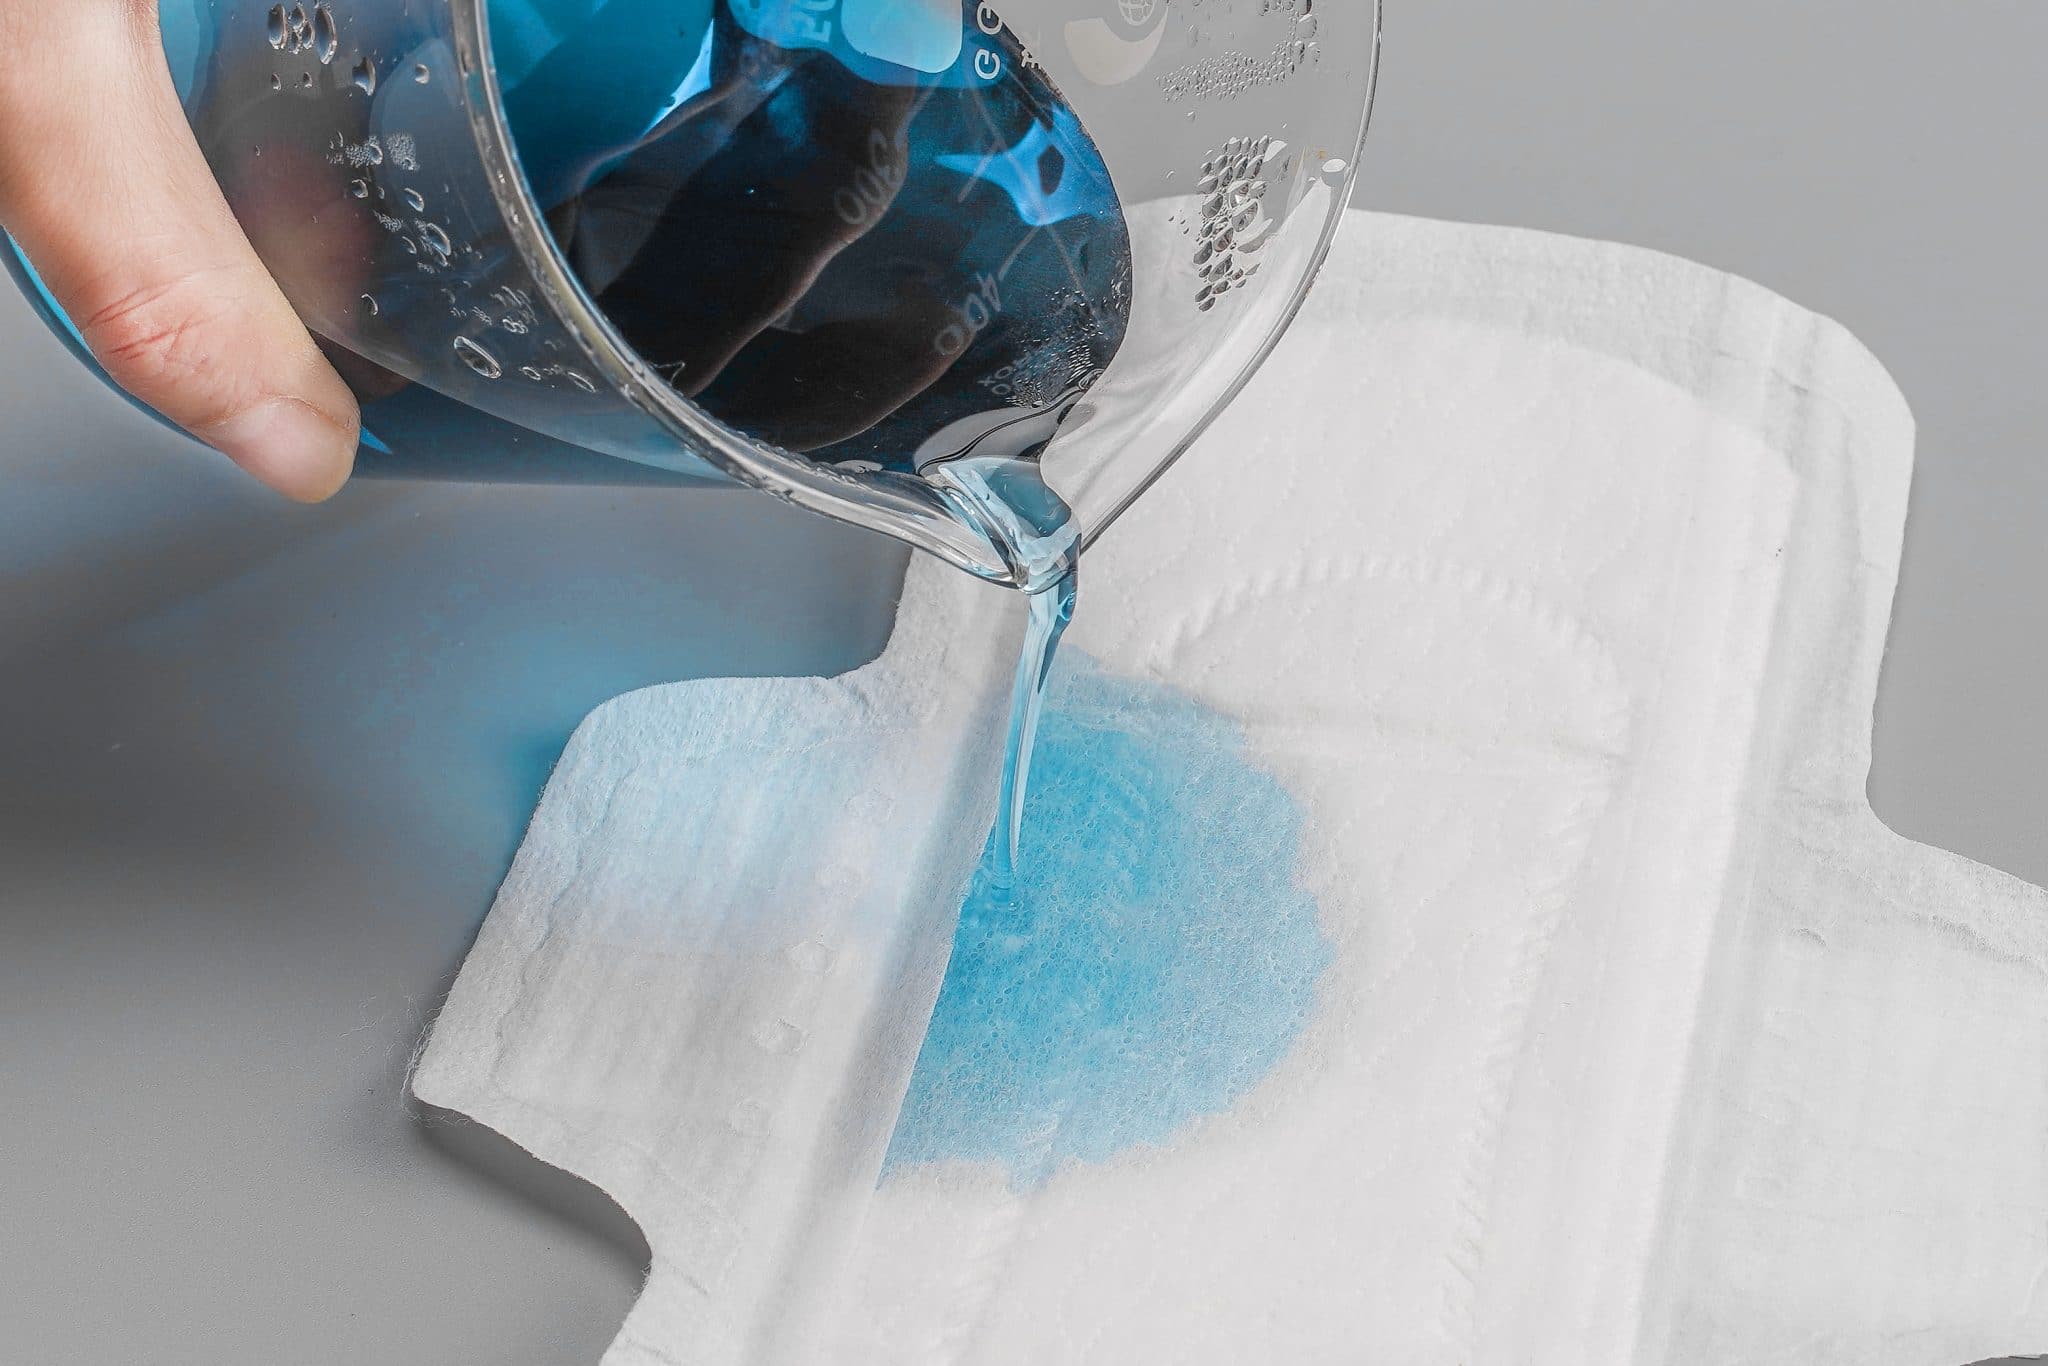 Les serviettes hygiéniques sont-elles bonnes pour la santé ?